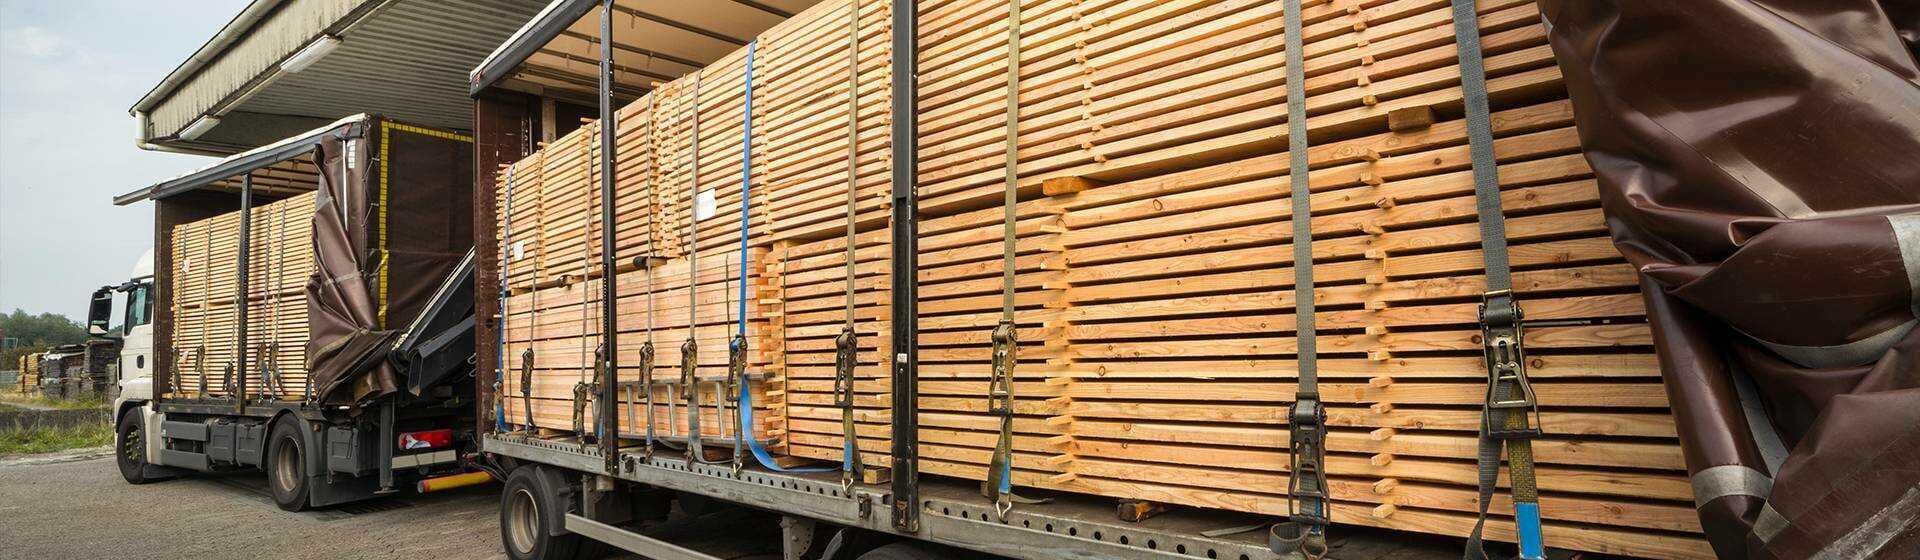 Drewno zapakowane na przyczepę